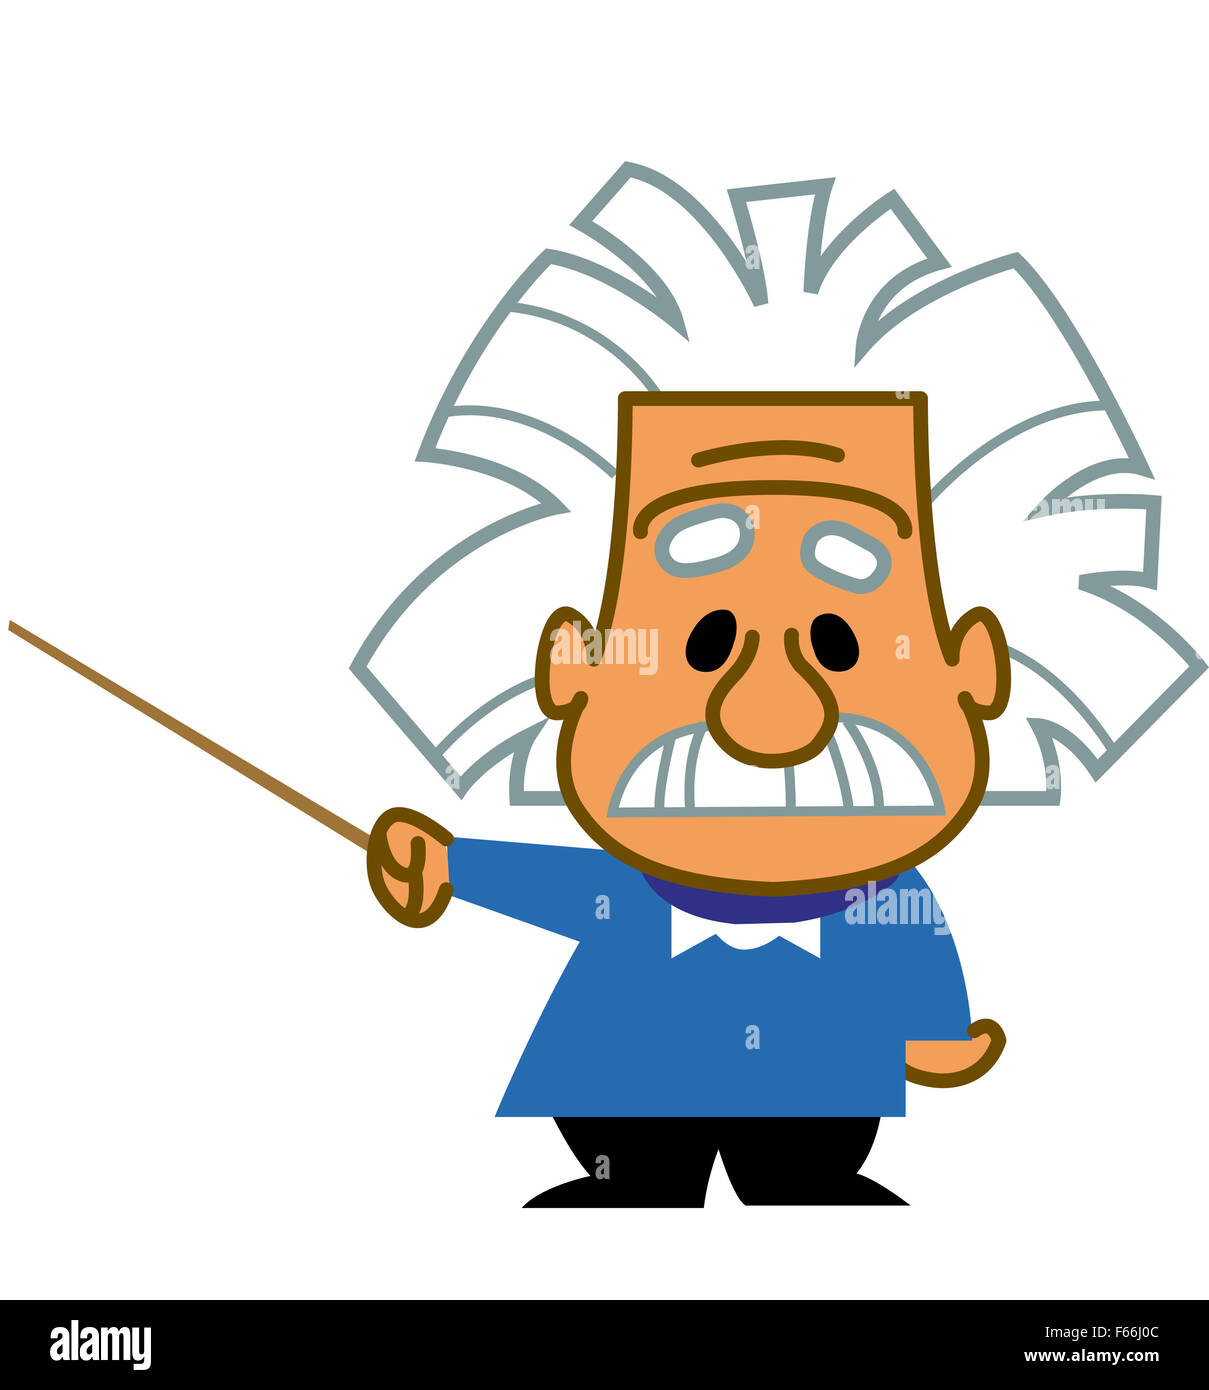 Albert Einstein cartoon scientist genius professor teacher holding a  pointer Stock Photo - Alamy